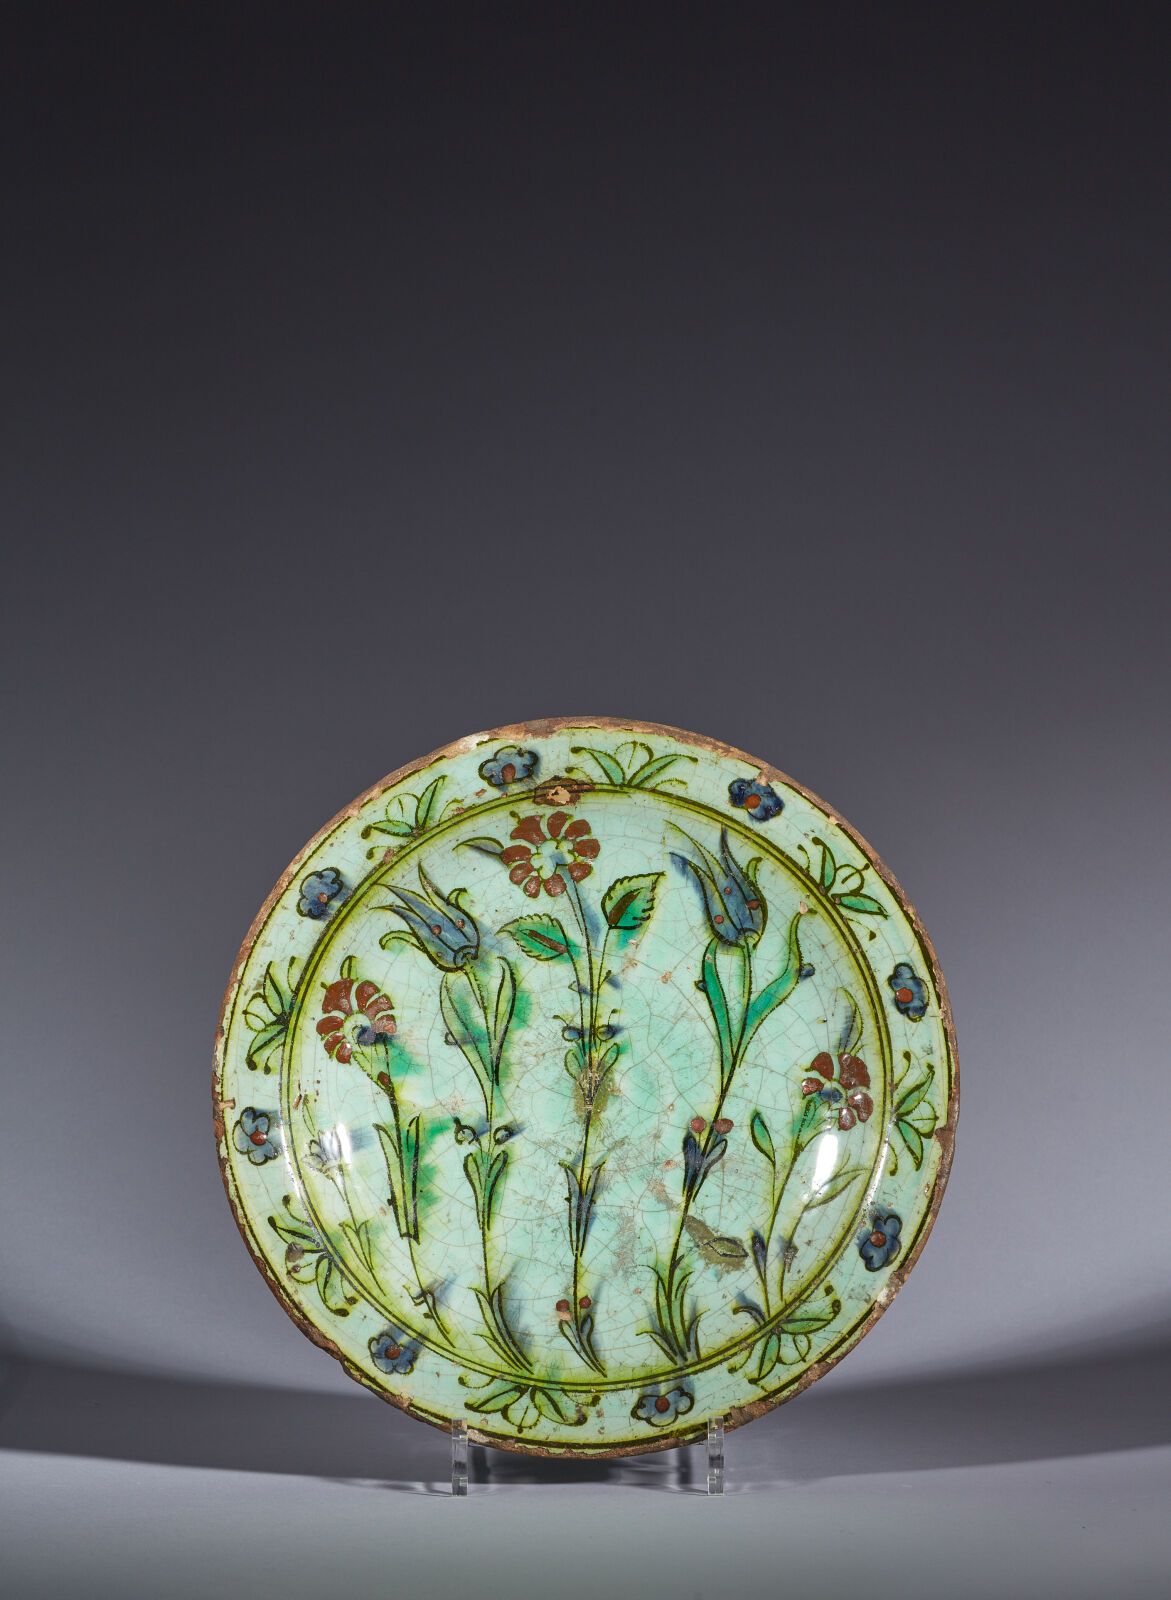 Null 奥斯曼土耳其，伊兹尼克，17 世纪
花饰盘
蓝绿色釉下多色彩绘装饰硅质陶瓷盘。五朵起伏的花茎组成了大气的中央构图，花冠和成对的叶子组成了黑色边框。
(&hellip;